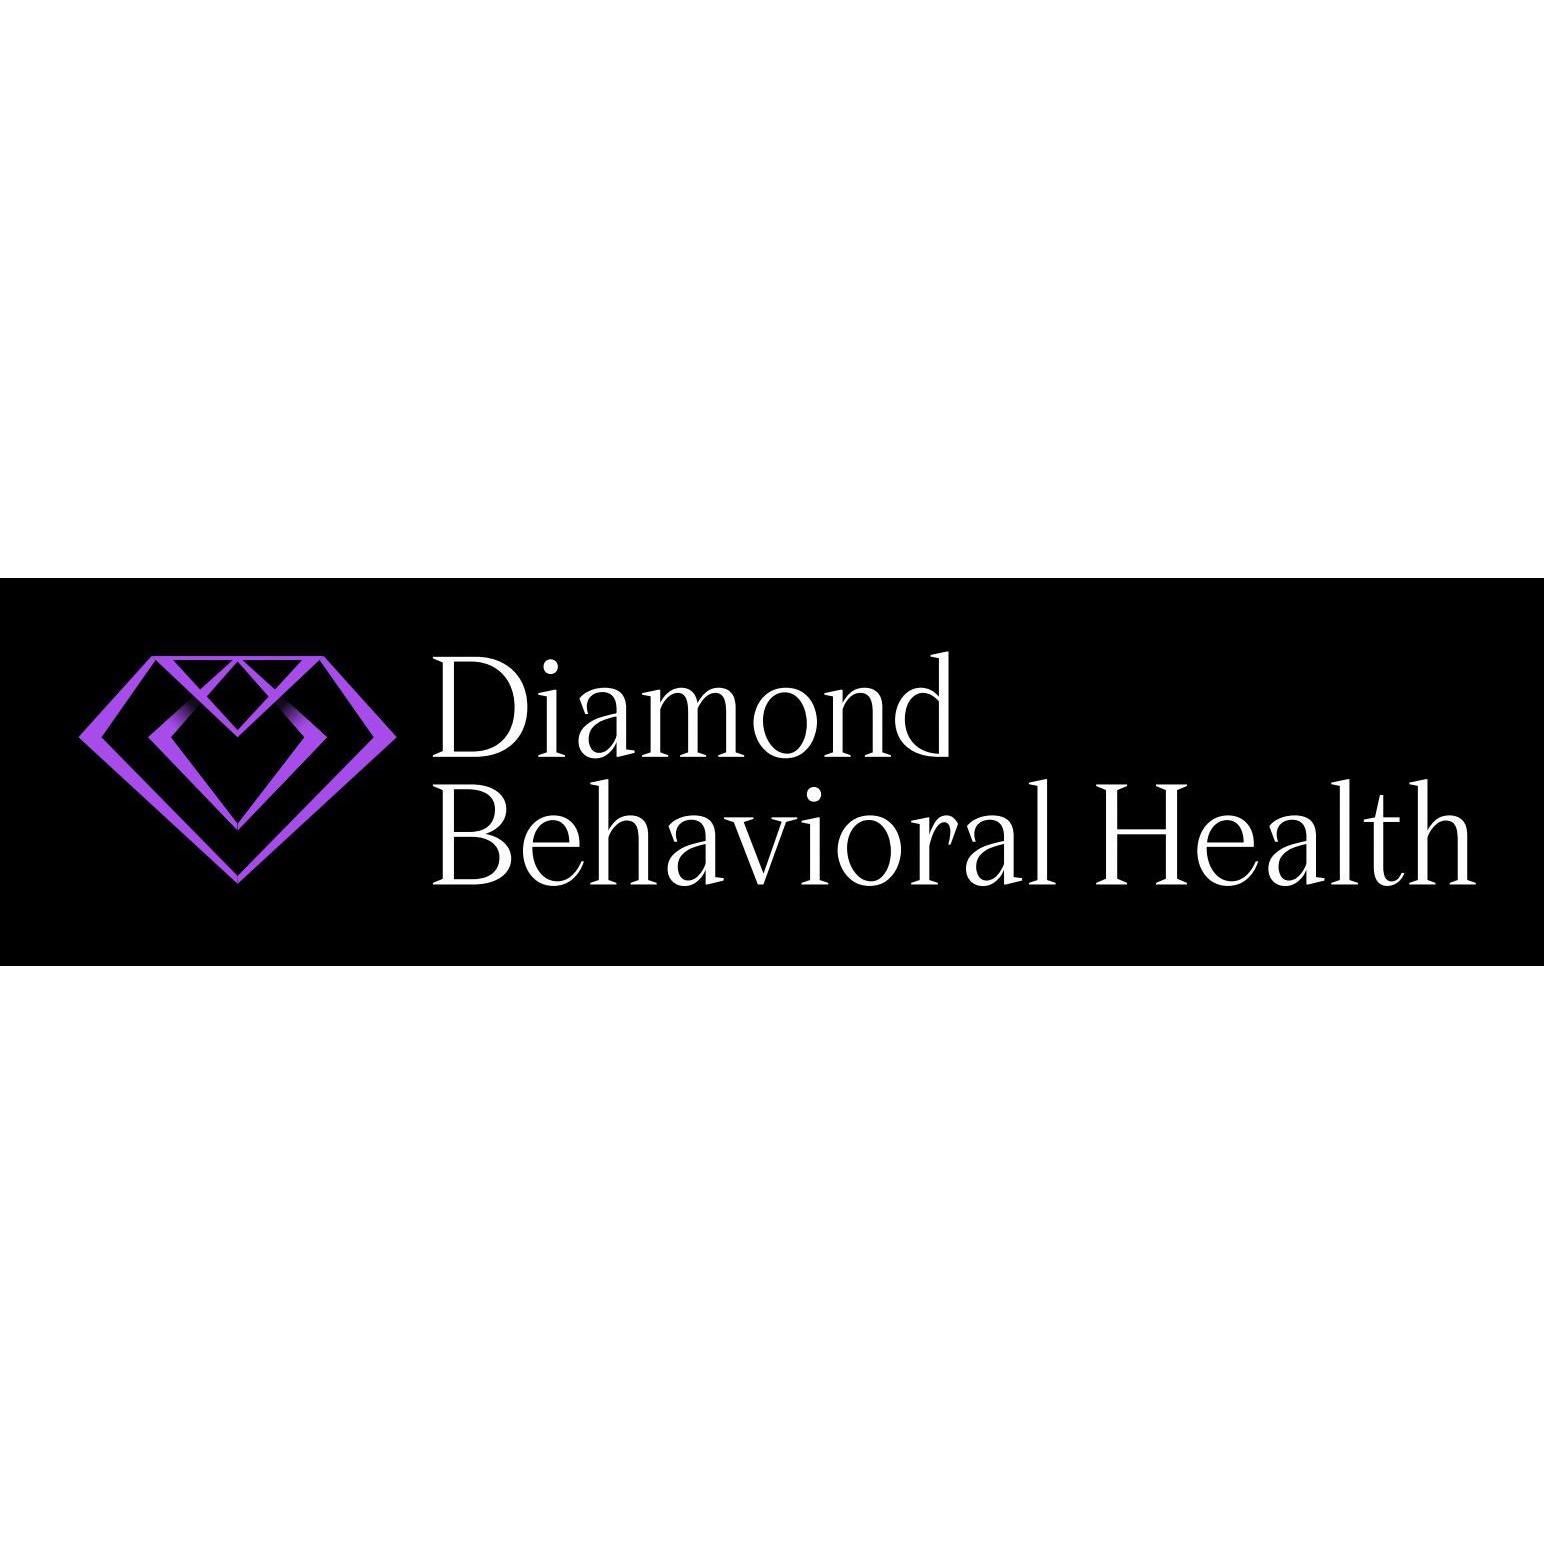 Diamond Behavioral Health - Palm Beach Gardens, FL 33403 - (561)785-0925 | ShowMeLocal.com